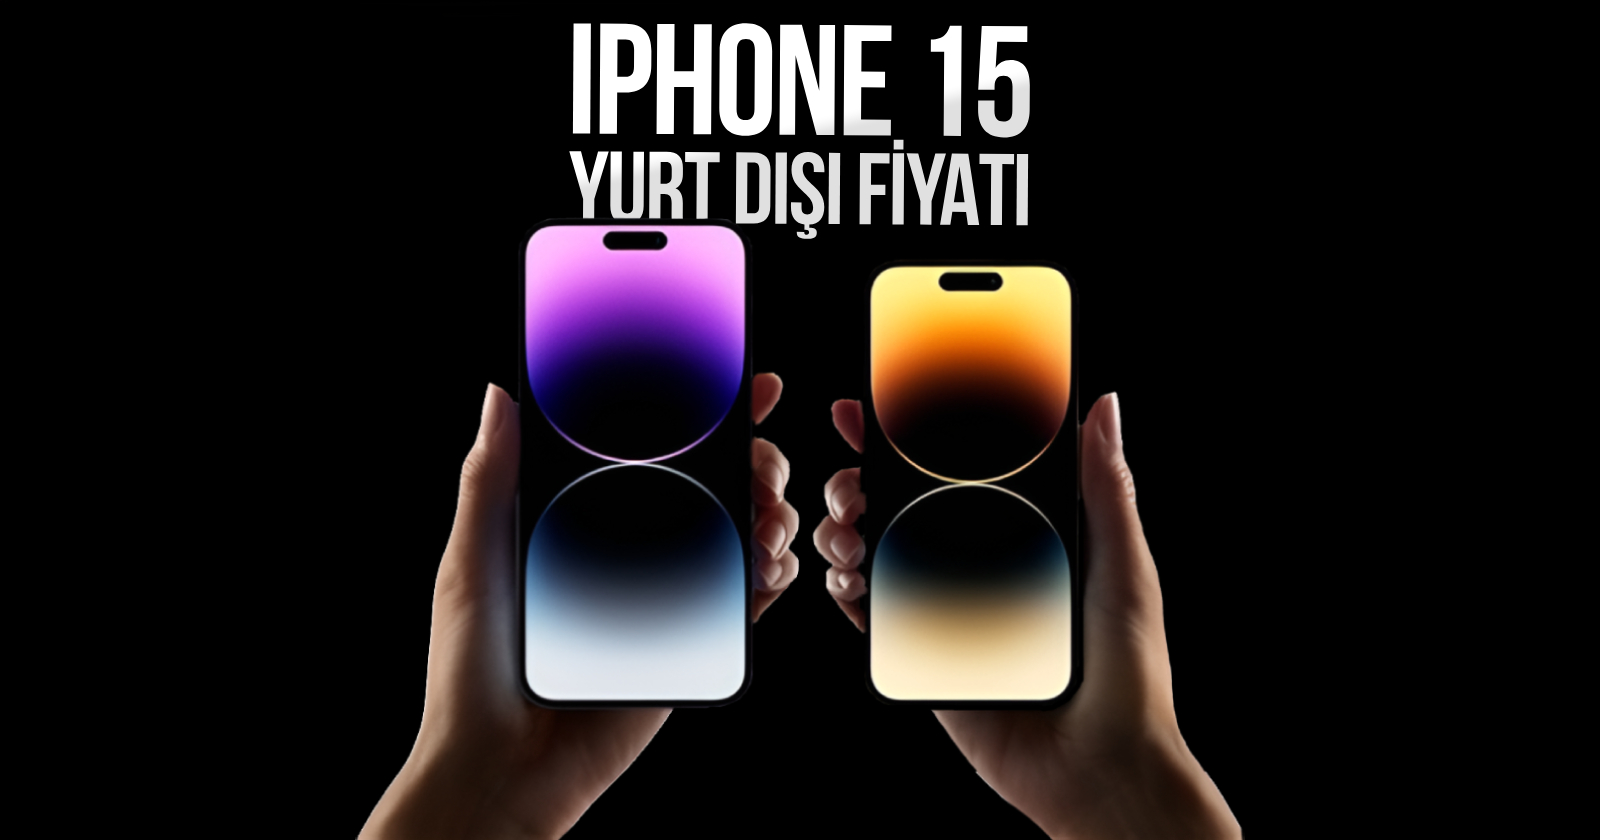 iphone-15-pro-max-yurt-disi-fiyati-7.jpg